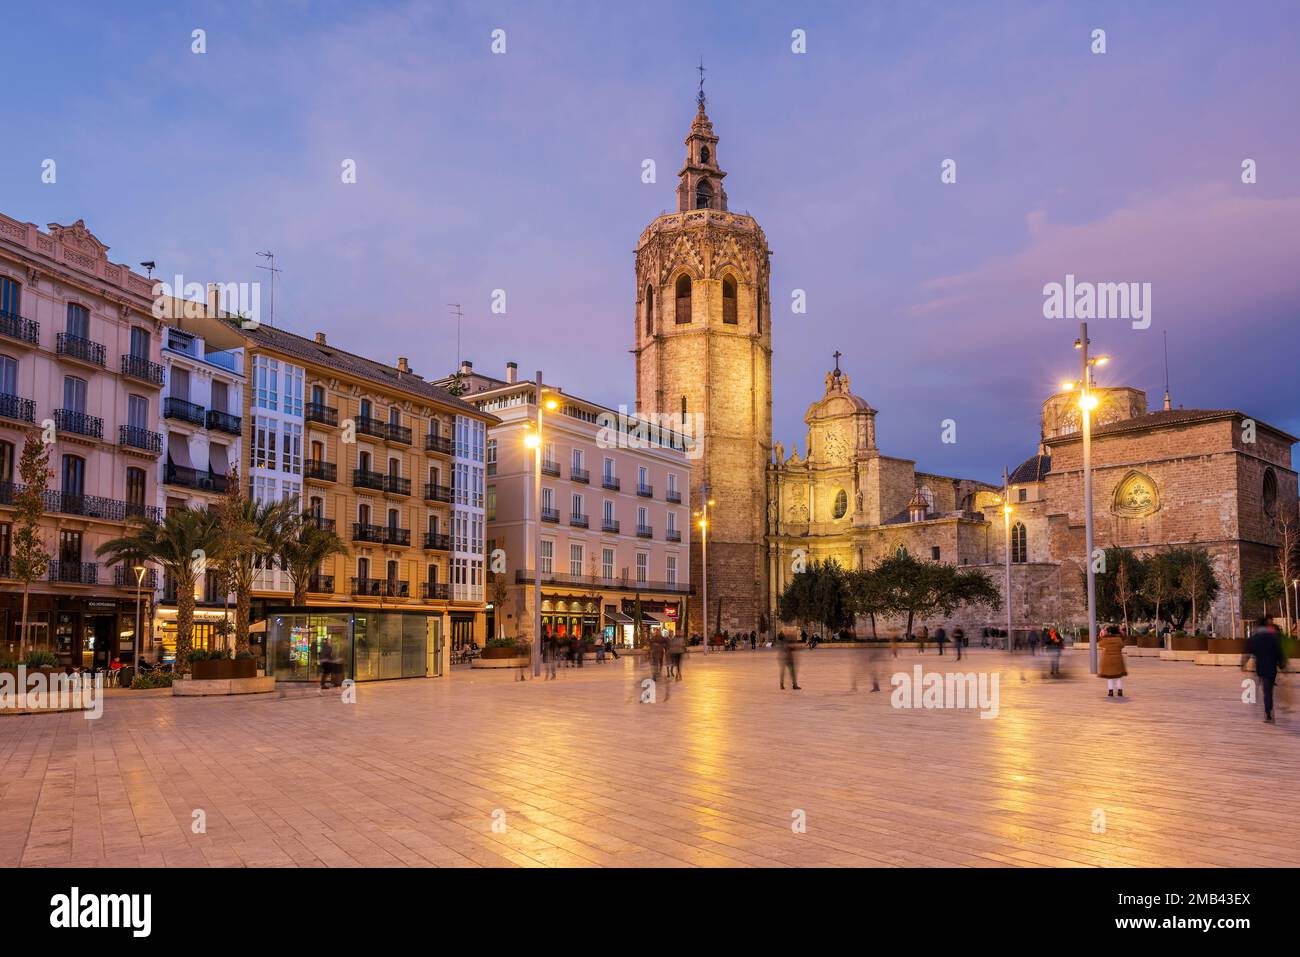 Plaza de la Reina et clocher Micalet, Valence, Espagne Banque D'Images